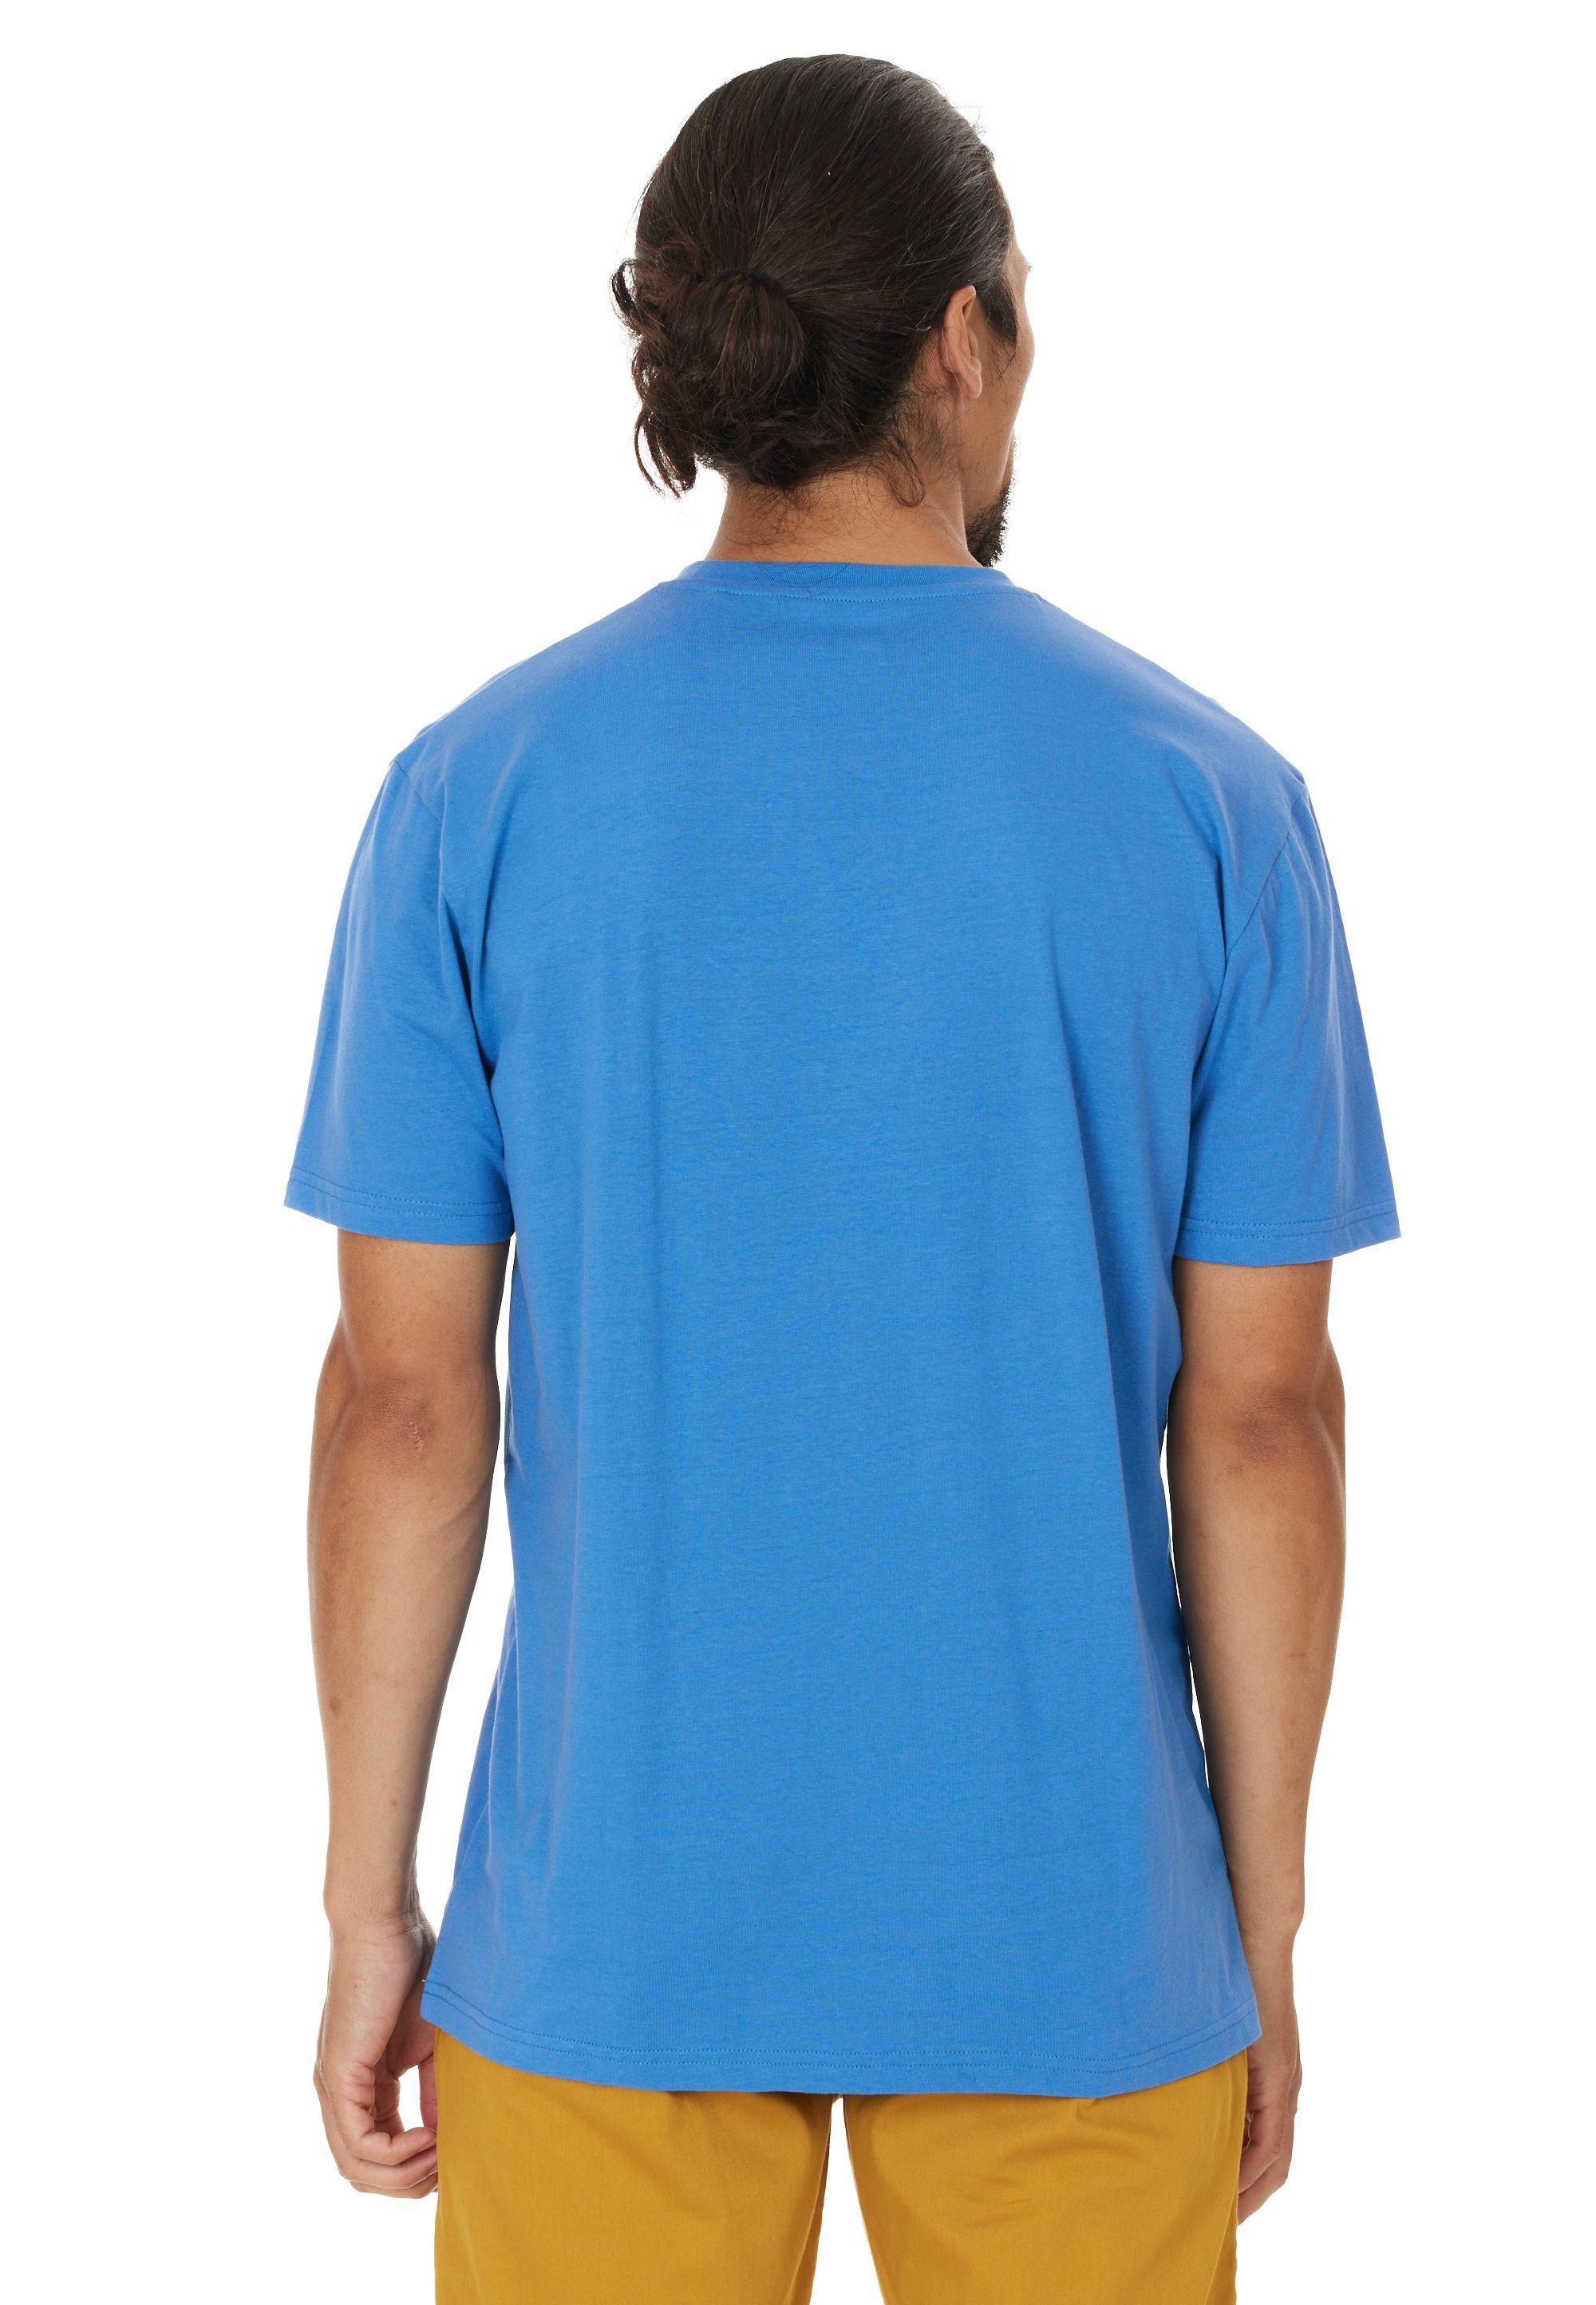 CRUZ T-Shirt Beachlife im Qualität atmungsaktiver mit sommerlichen blau Design